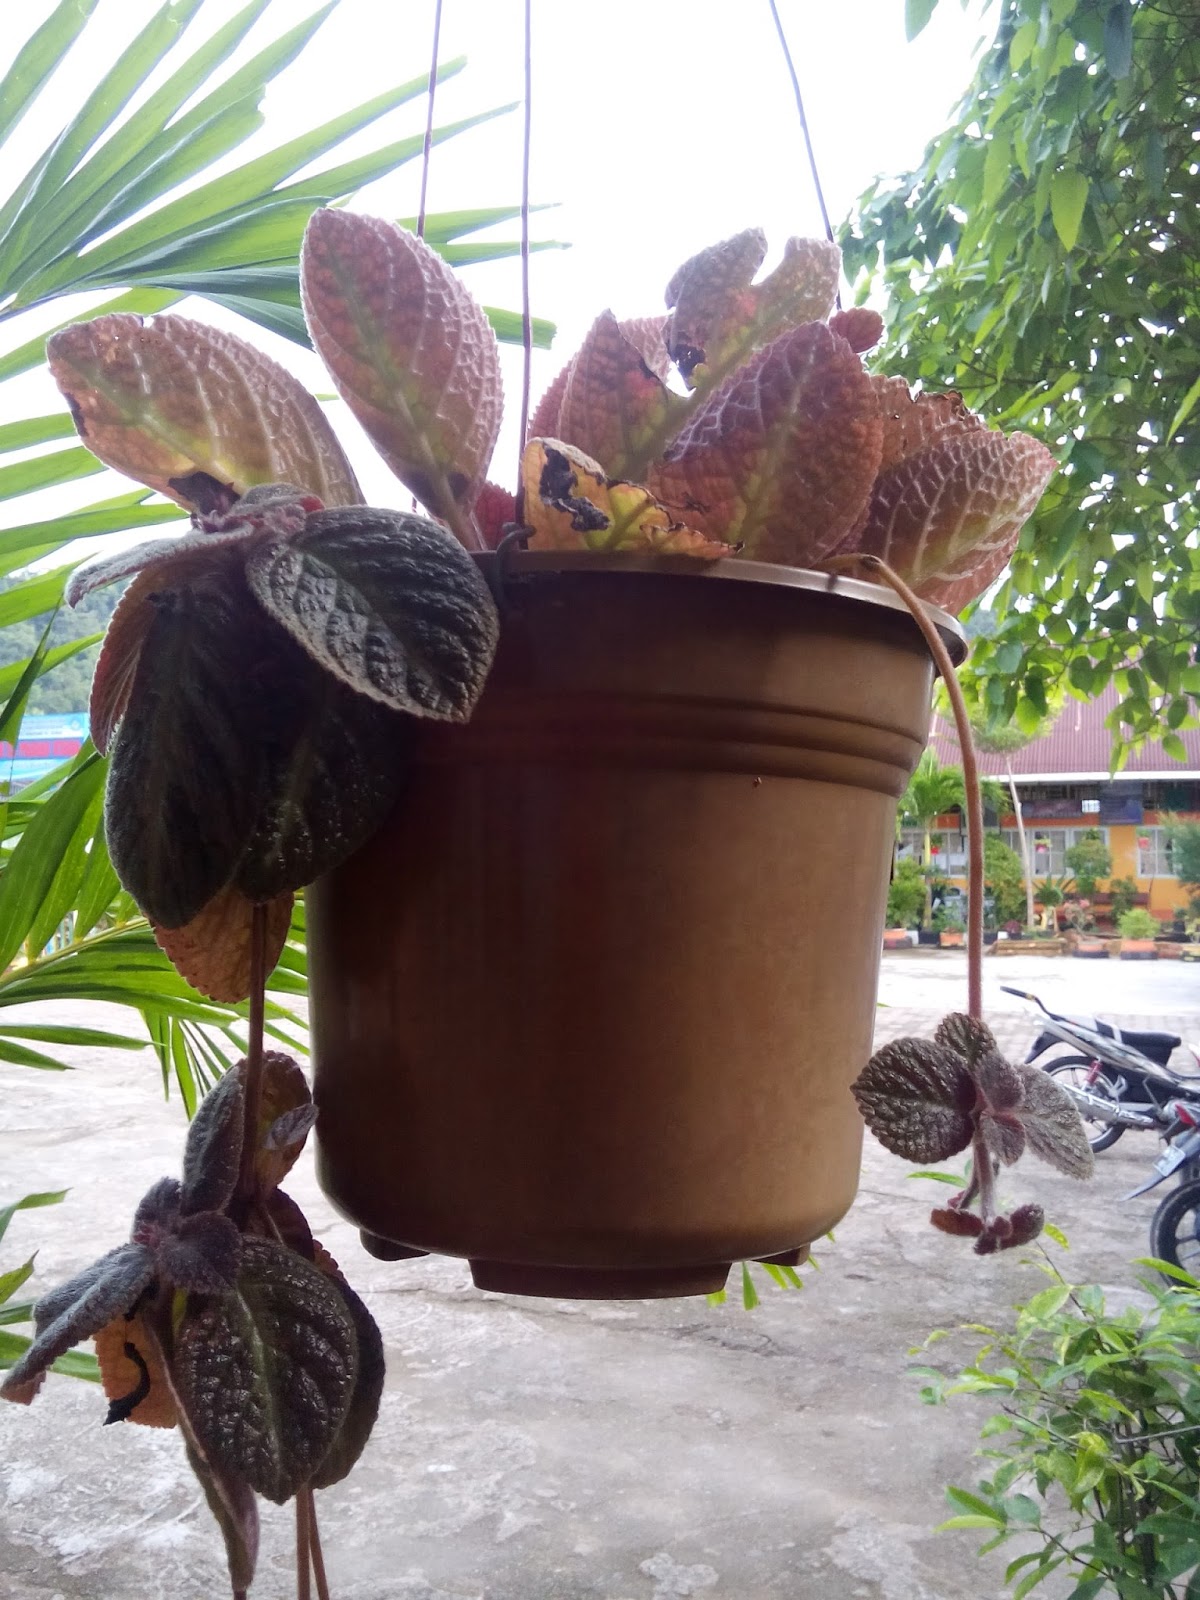  tanaman  hias  pada pot  gantung AgroMed SAINS